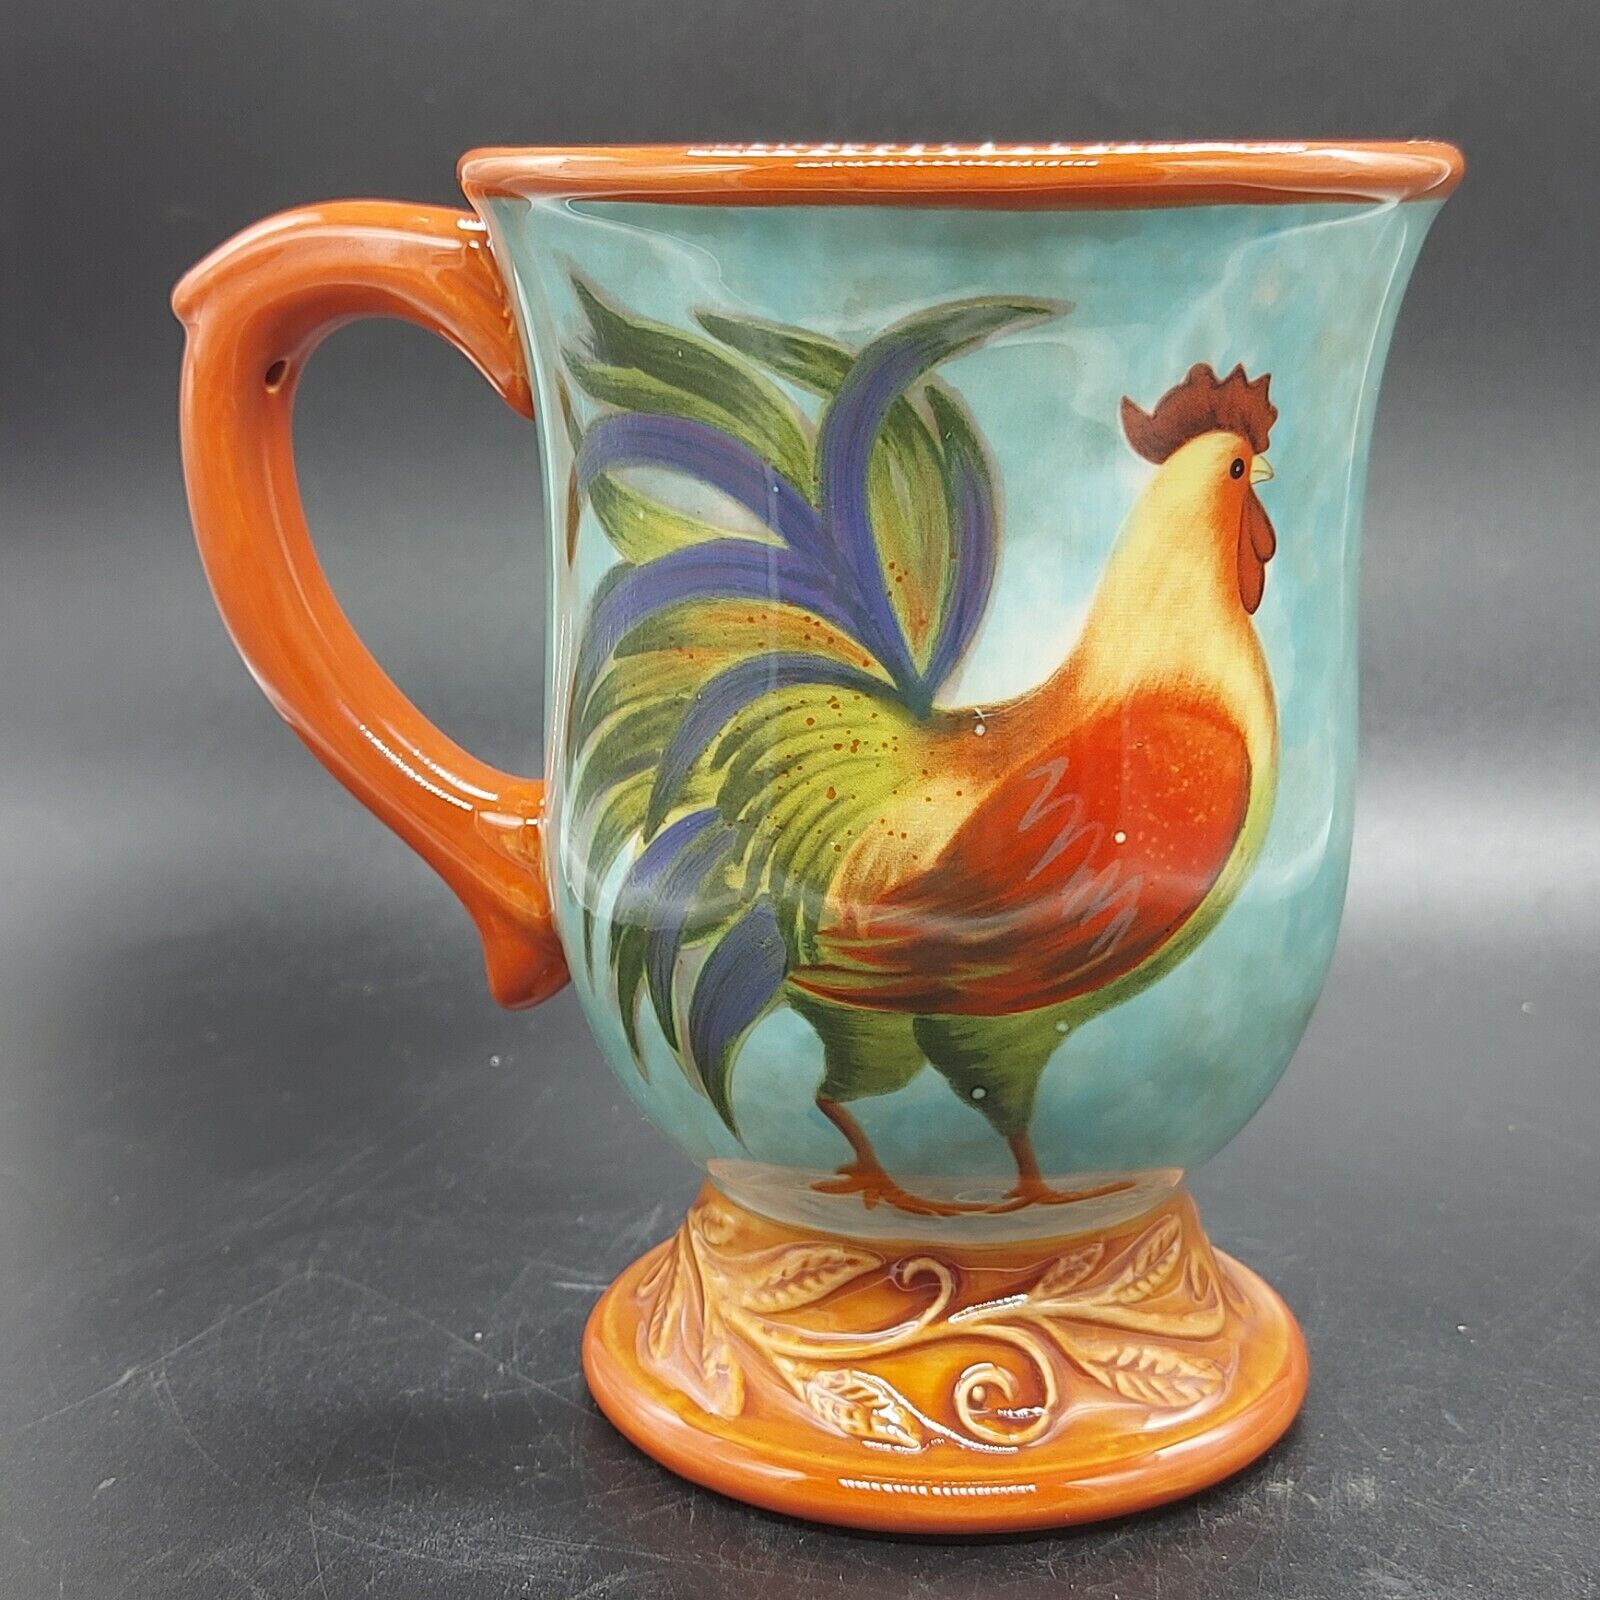 Vintage Ceramic Cracker Barrel Break of Dawn Rooster Coffee Mug By Susan Winget 